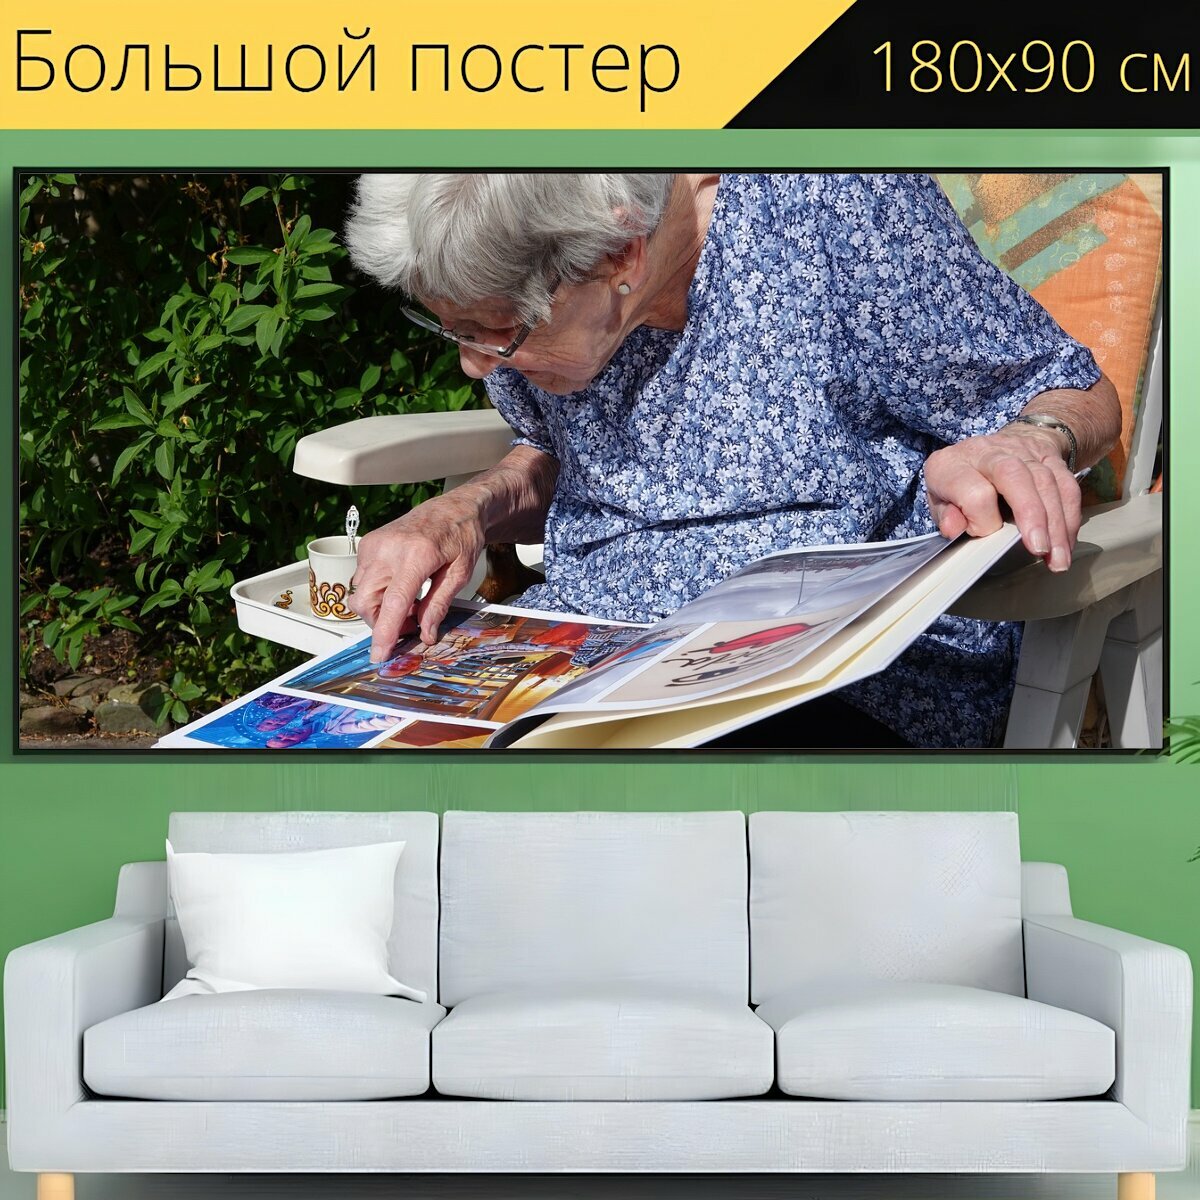 Большой постер "Фотоальбом, бабушка, счастливый" 180 x 90 см. для интерьера